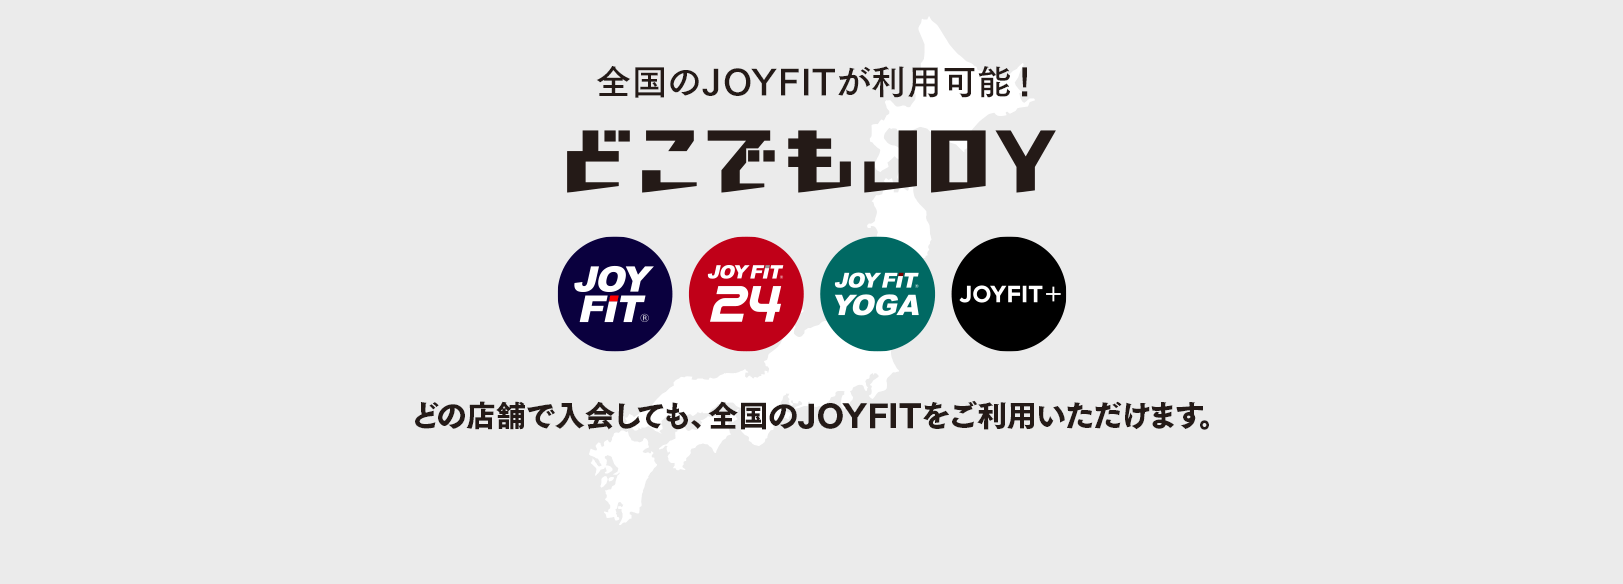 JOYFIT24吉祥寺の画像